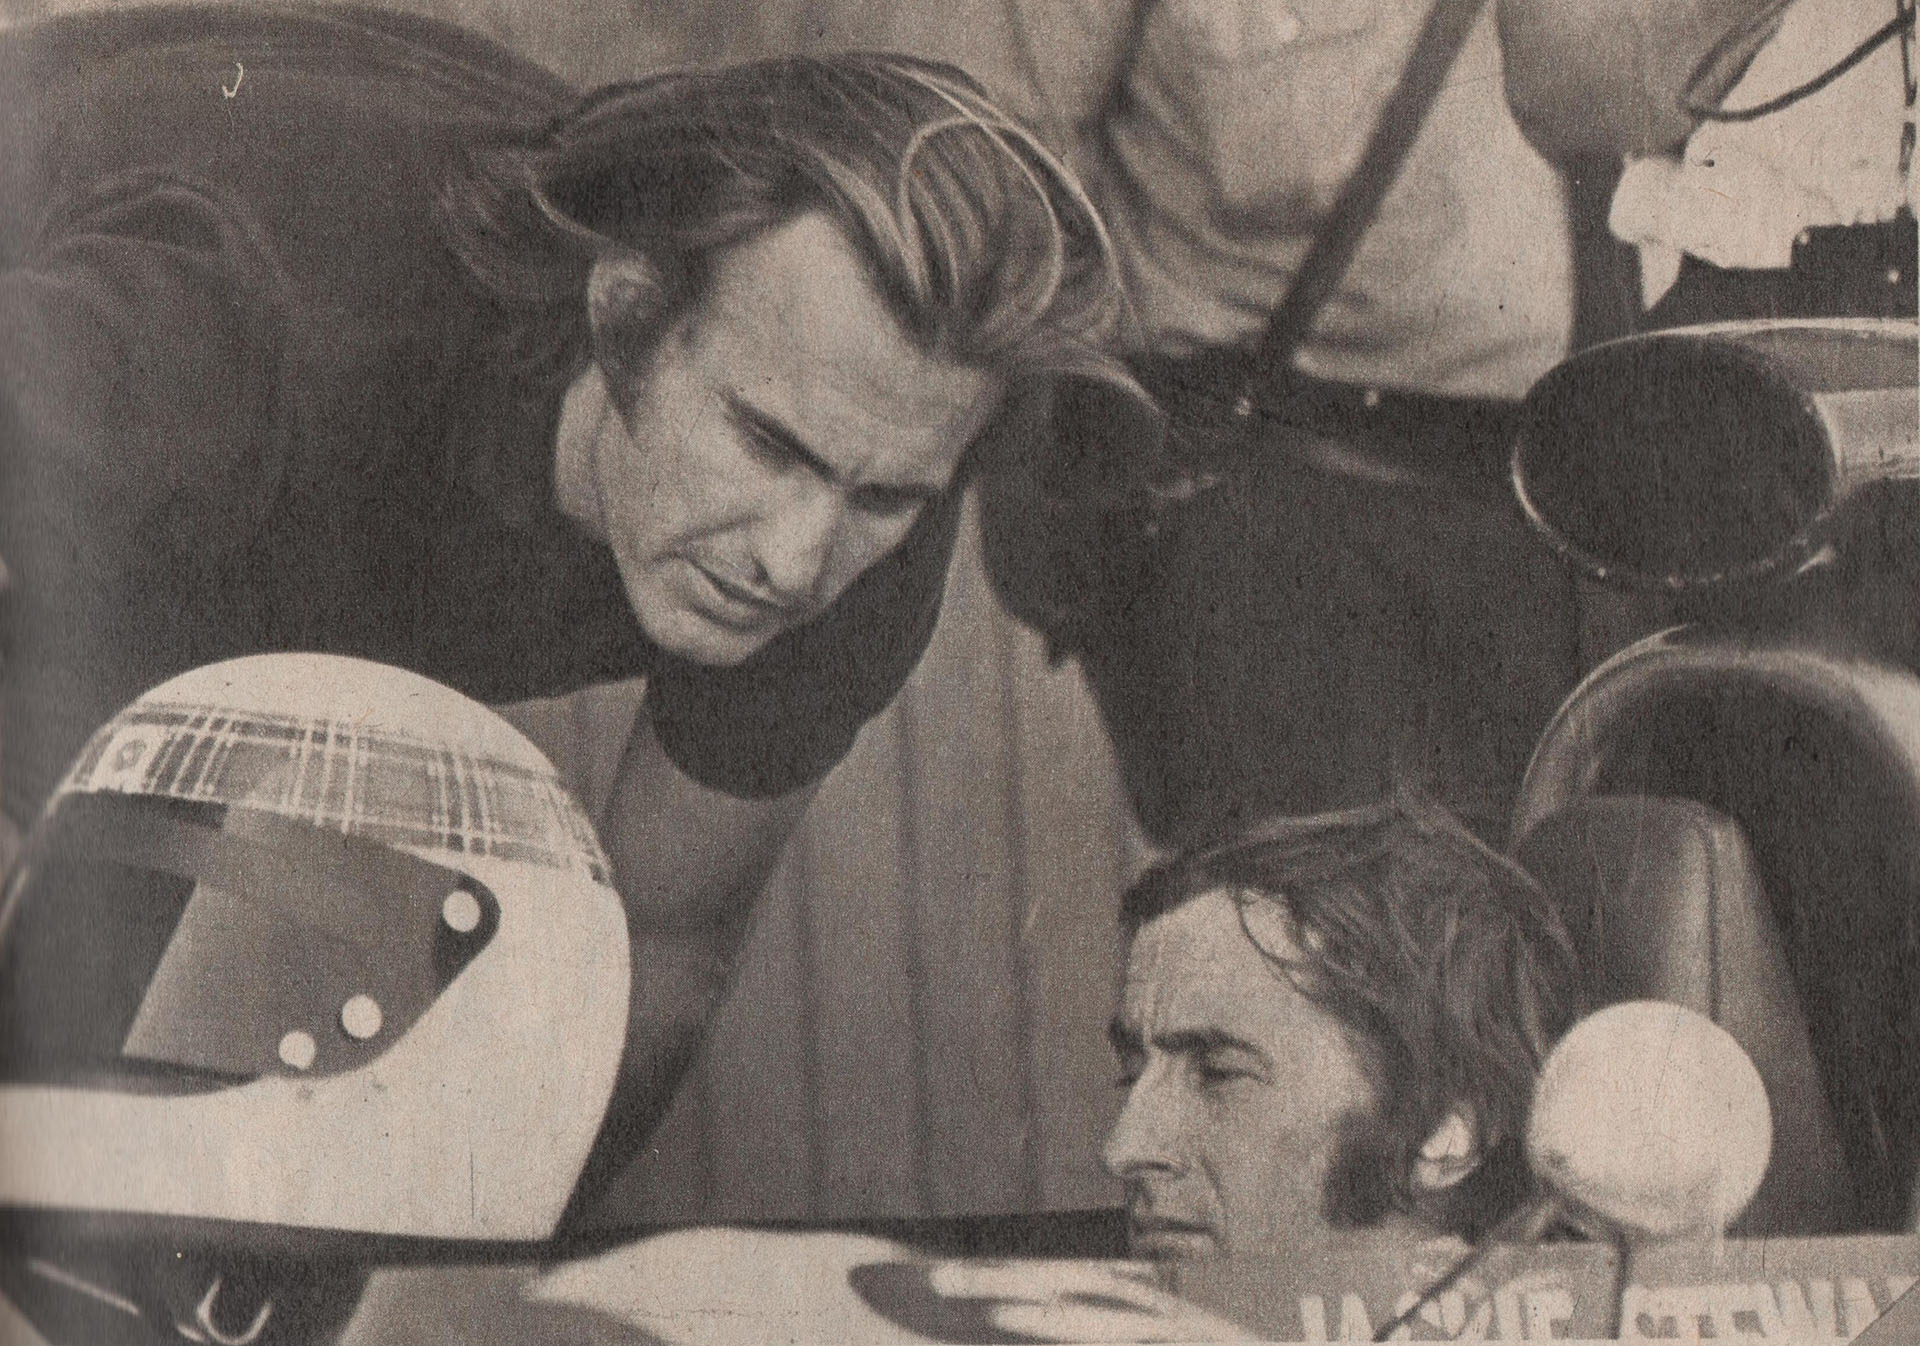 Reutemann "devorándose" con la mirada el Tyrrell de su ídolo, Jackie Stewart. Fue en los días previos (Archivo revista CORSA)